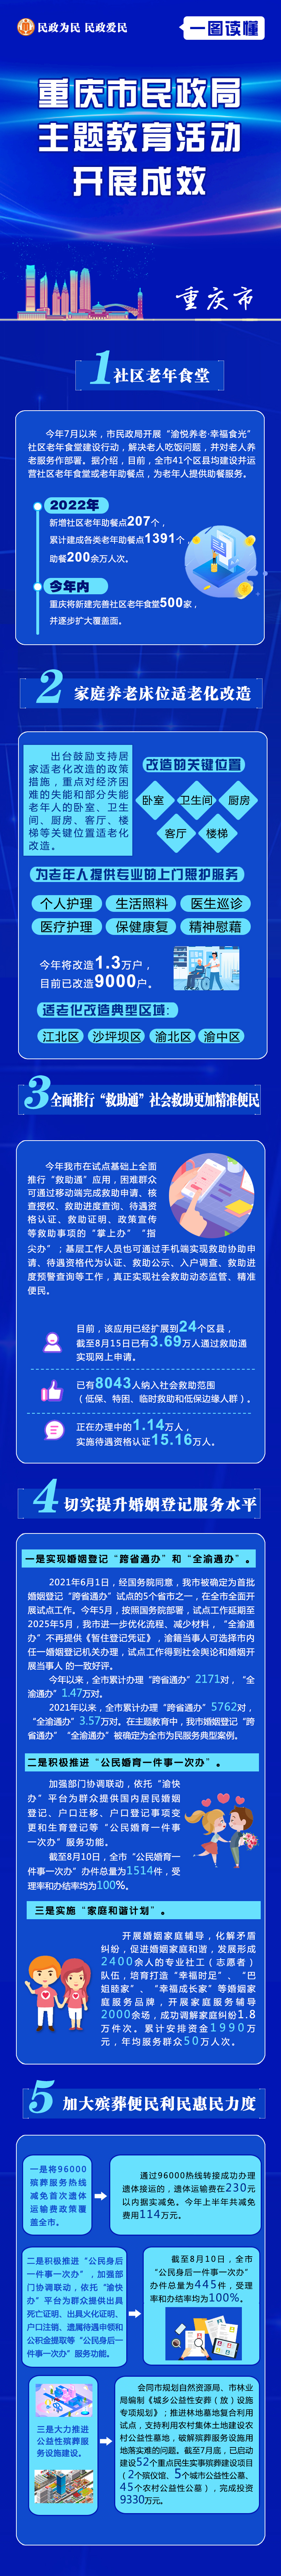 一图读懂 重庆市民政局主题教育活动开展成效